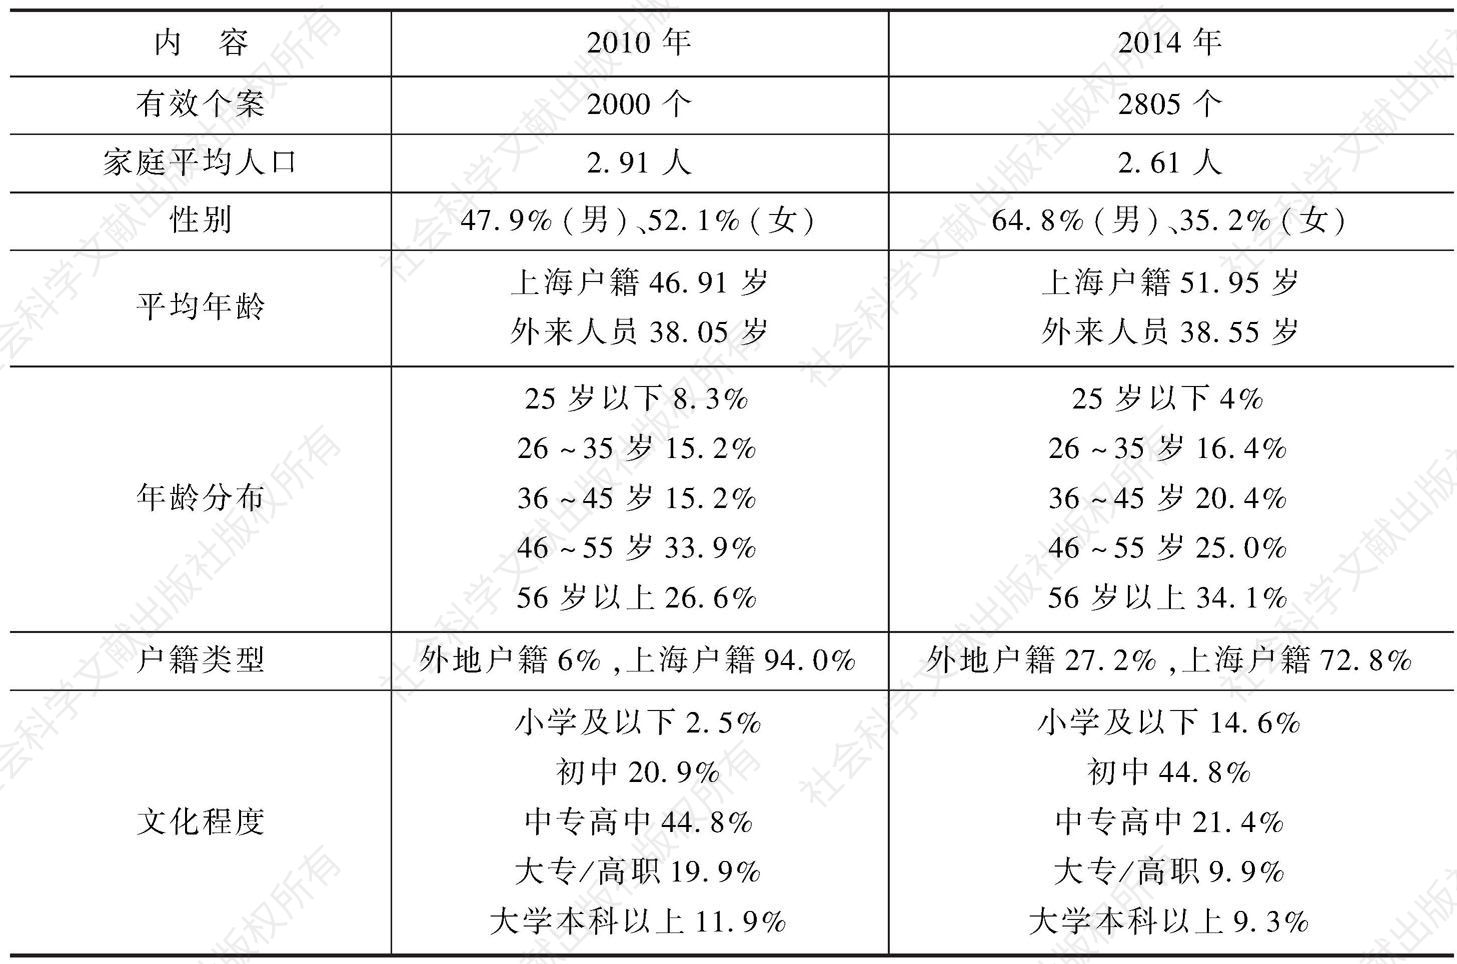 表1 2010年及2014年上海市民生活调查样本构成状况